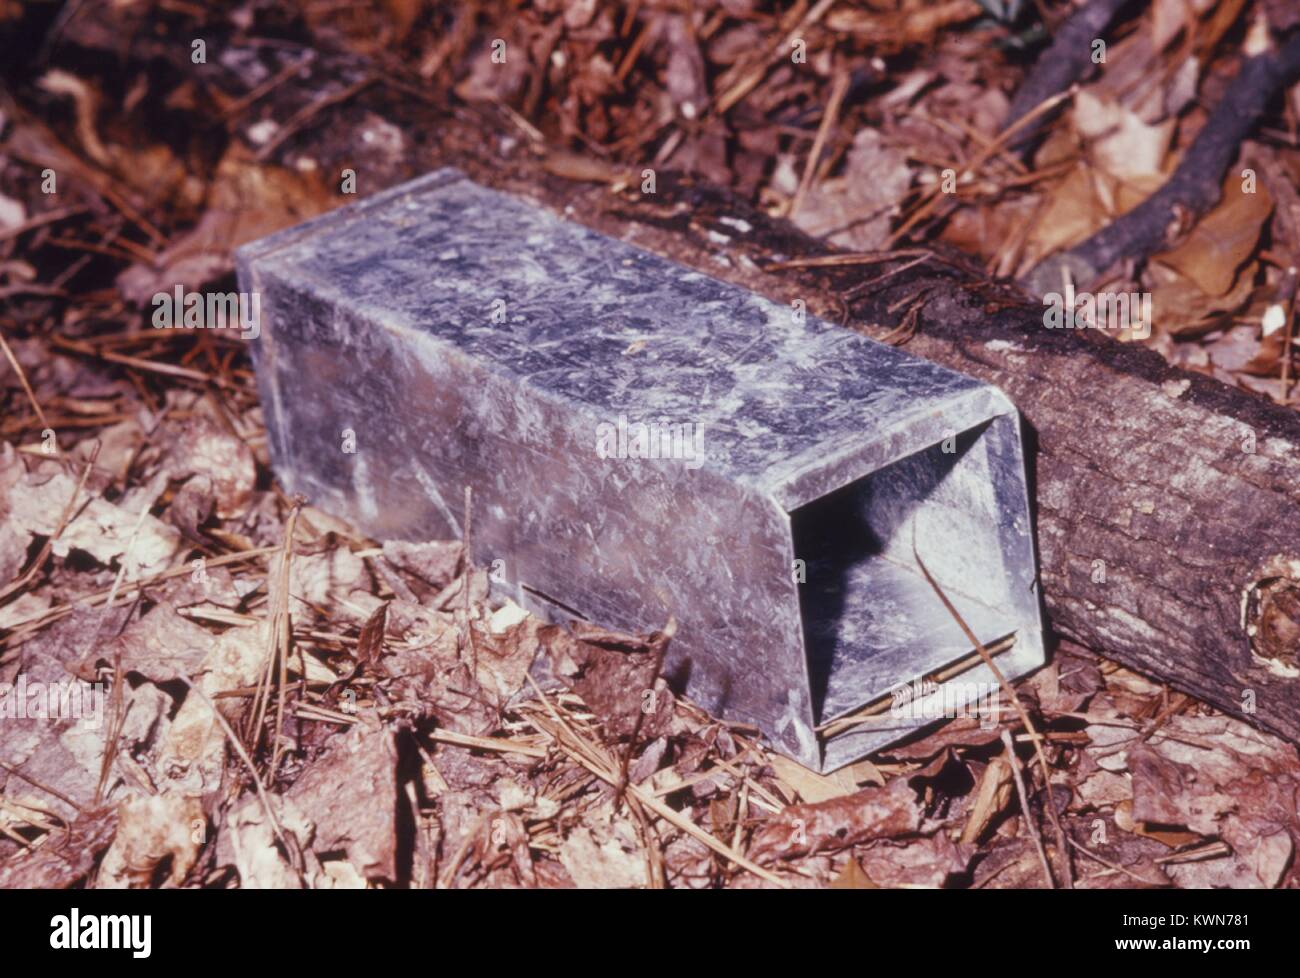 Questo è un alluminio Sherman trappola, che è stato usato per catturare gli animali vivono durante un 1974 arboviral studio, 1974. Il controllo degli animali è importante per il controllo degli artropodi-borne virus. Animali, come gli esseri umani possono essere infettati con arbovirus trasmessi quando essi sono morso di zanzara infetta i vettori. Immagine cortesia CDC. Foto Stock